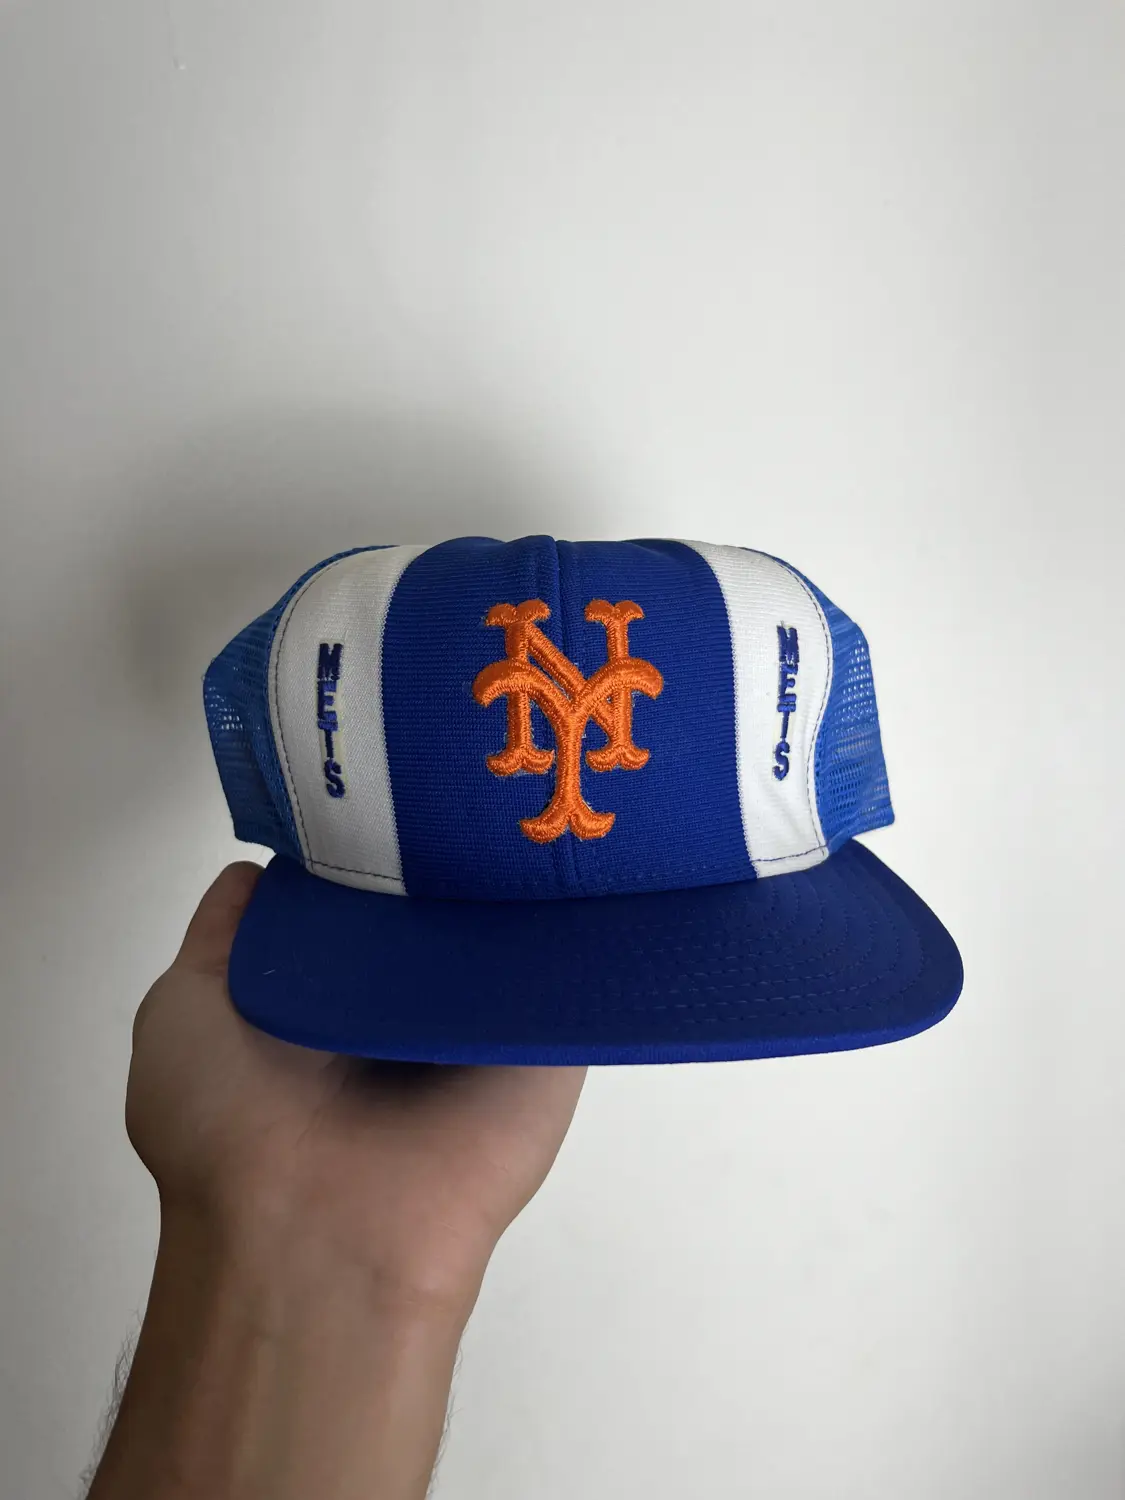 NY Mets snapback